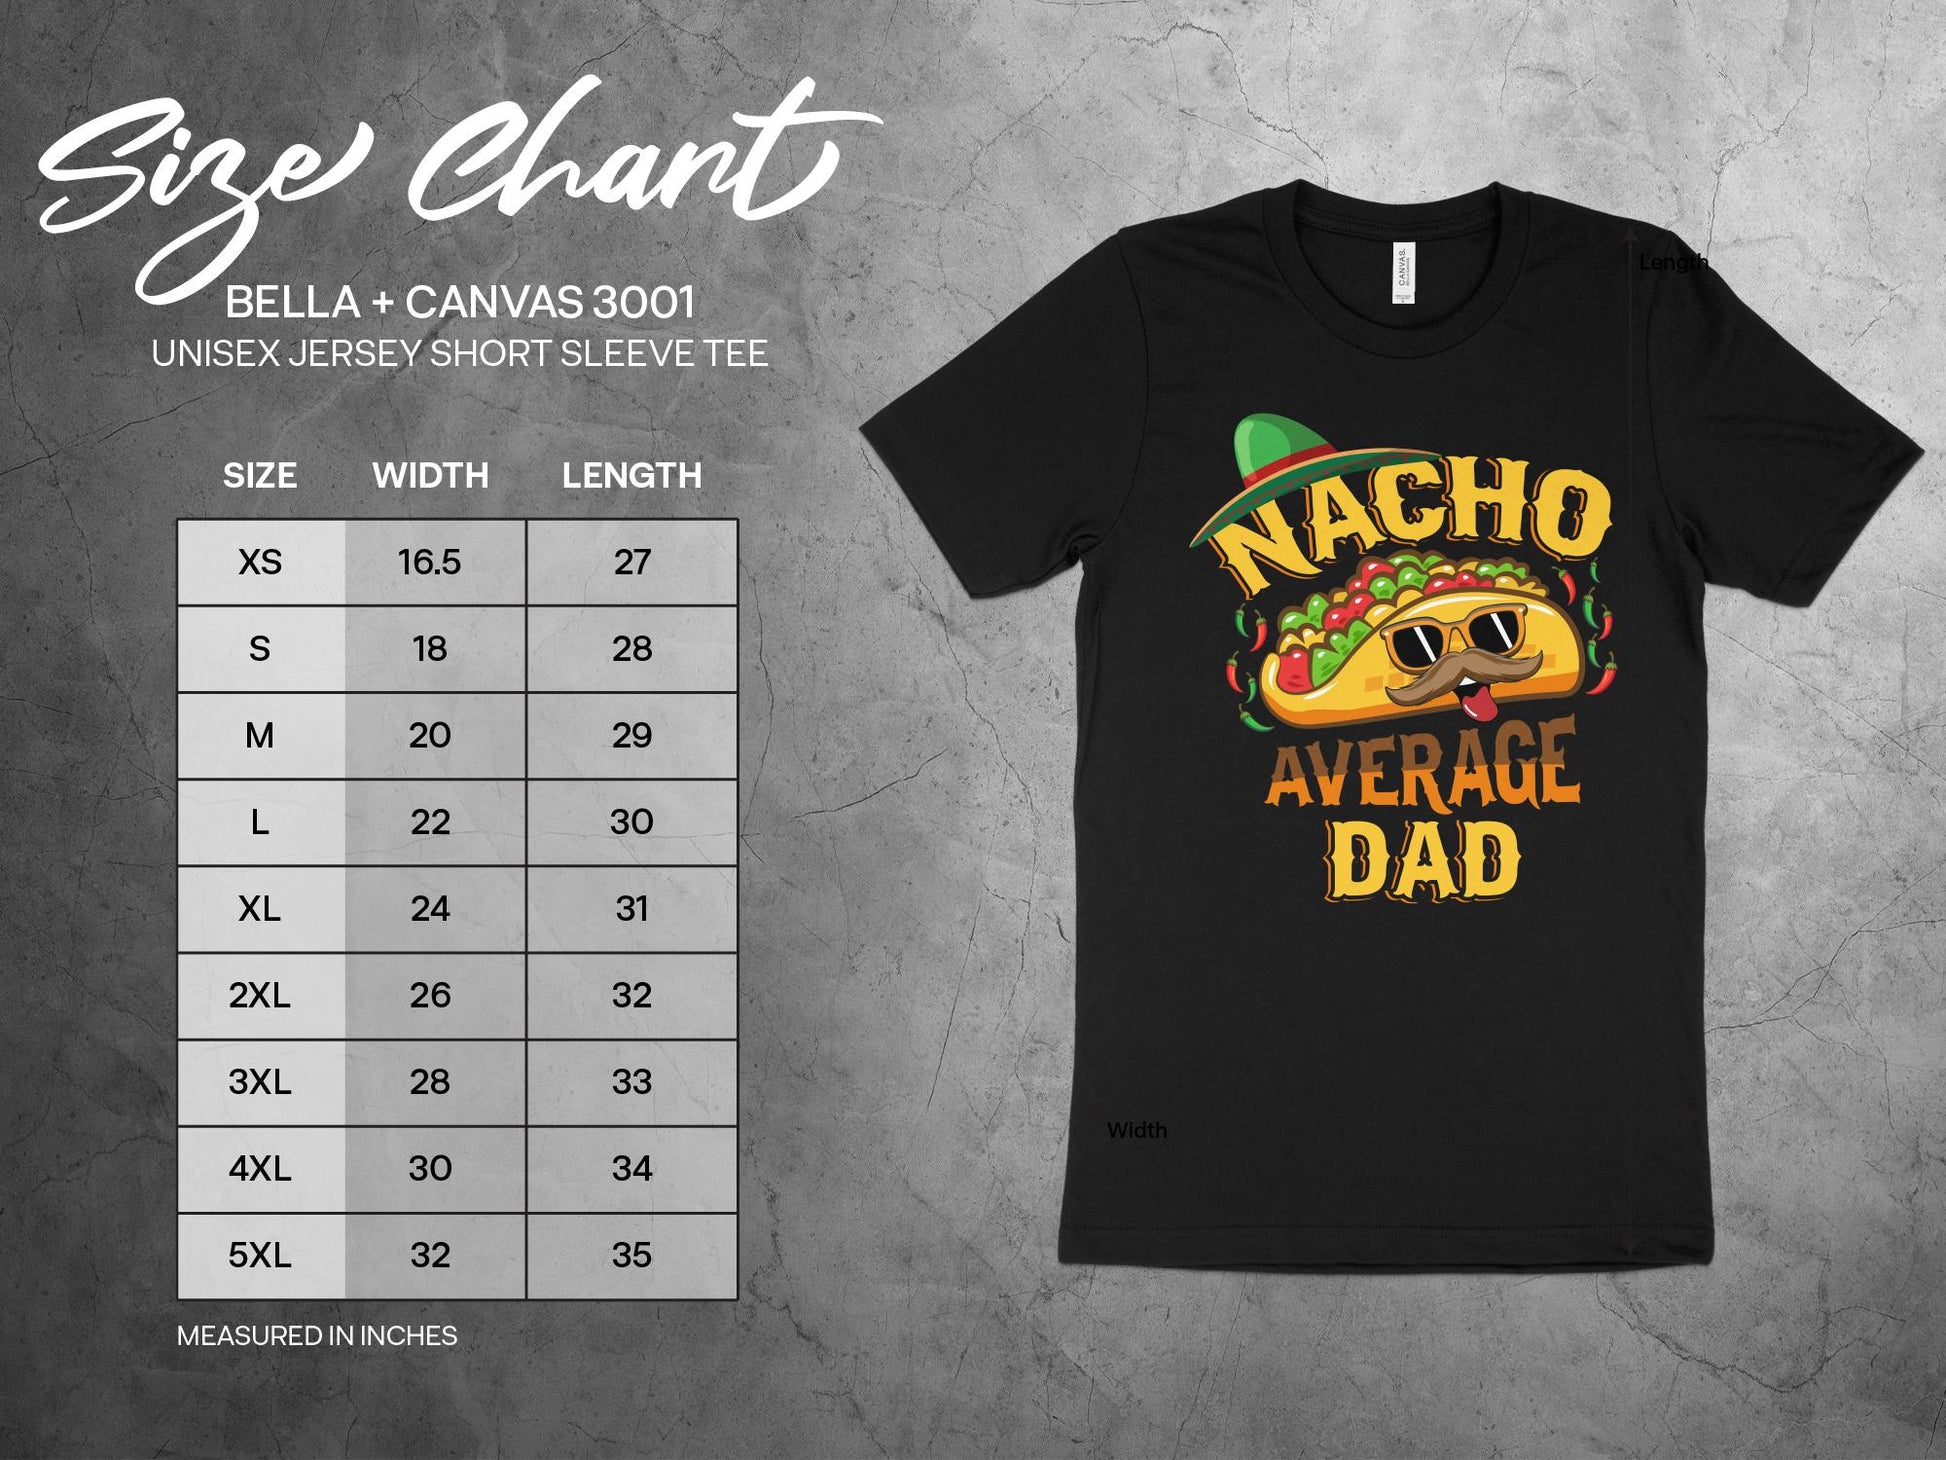 Nacho Average Dad Shirt, sizing chart